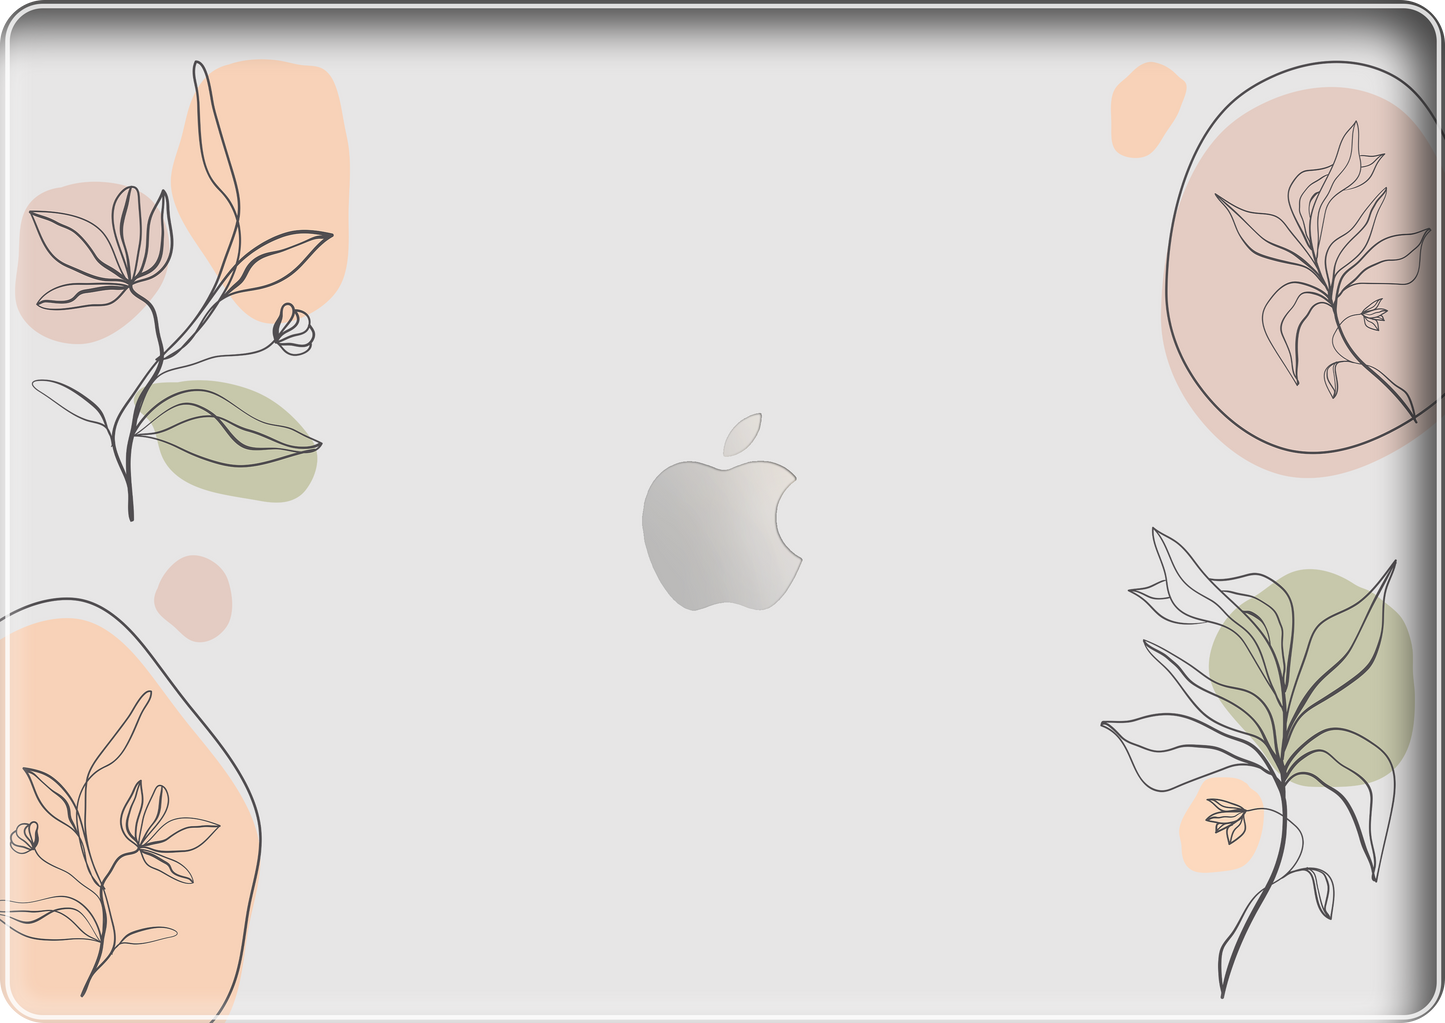 MacBook Snap Case - Sketchy Flowers